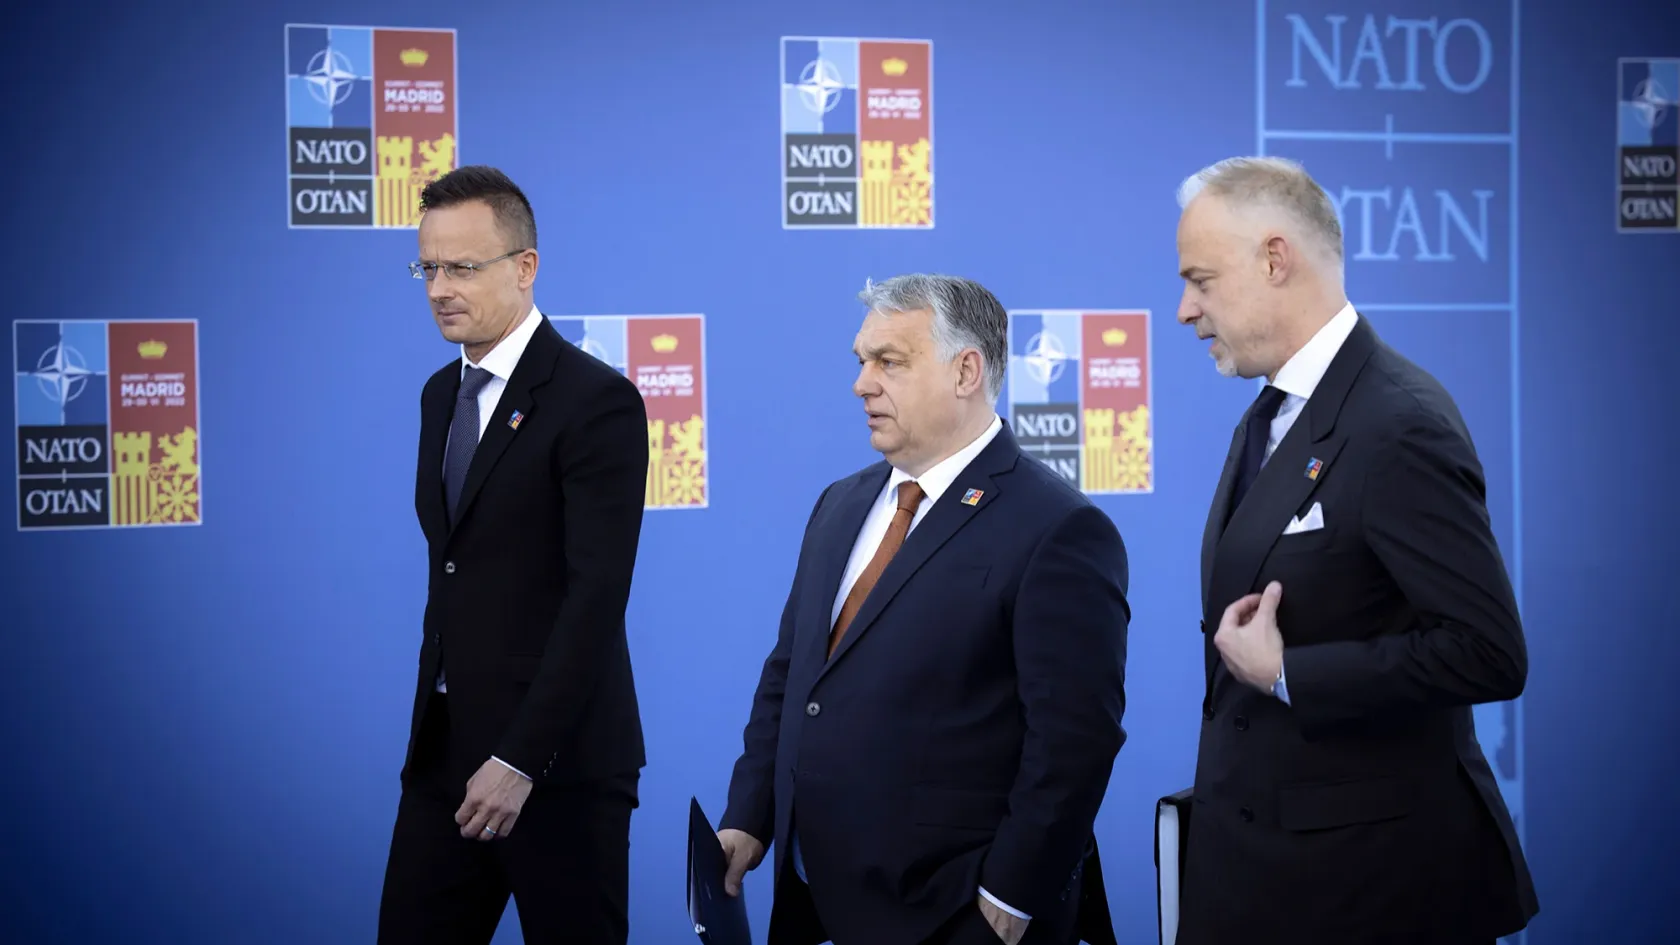 Bár a svéd politika keményen beleszállt Orbánba, bonyolultabb alku állhat a NATO-csatlakozás ügye mögött